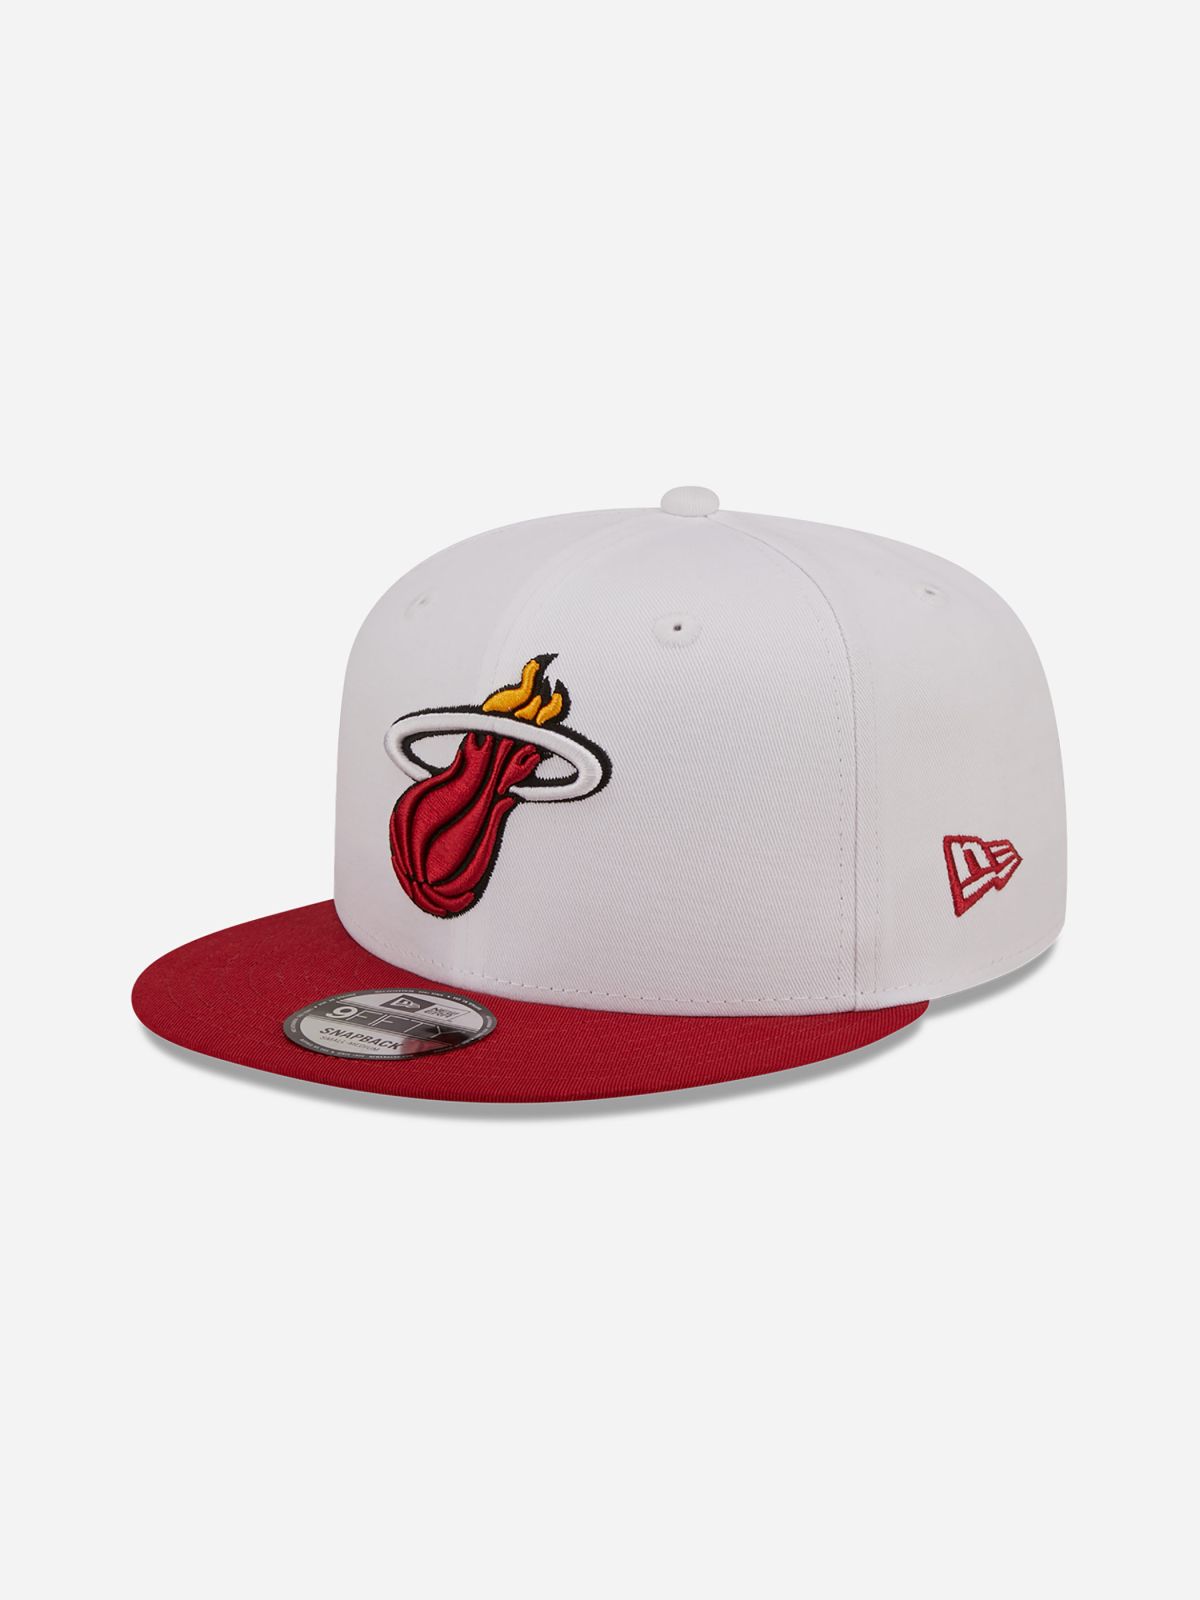  כובע מצחייה לוגו NBA / גברים של NEW ERA